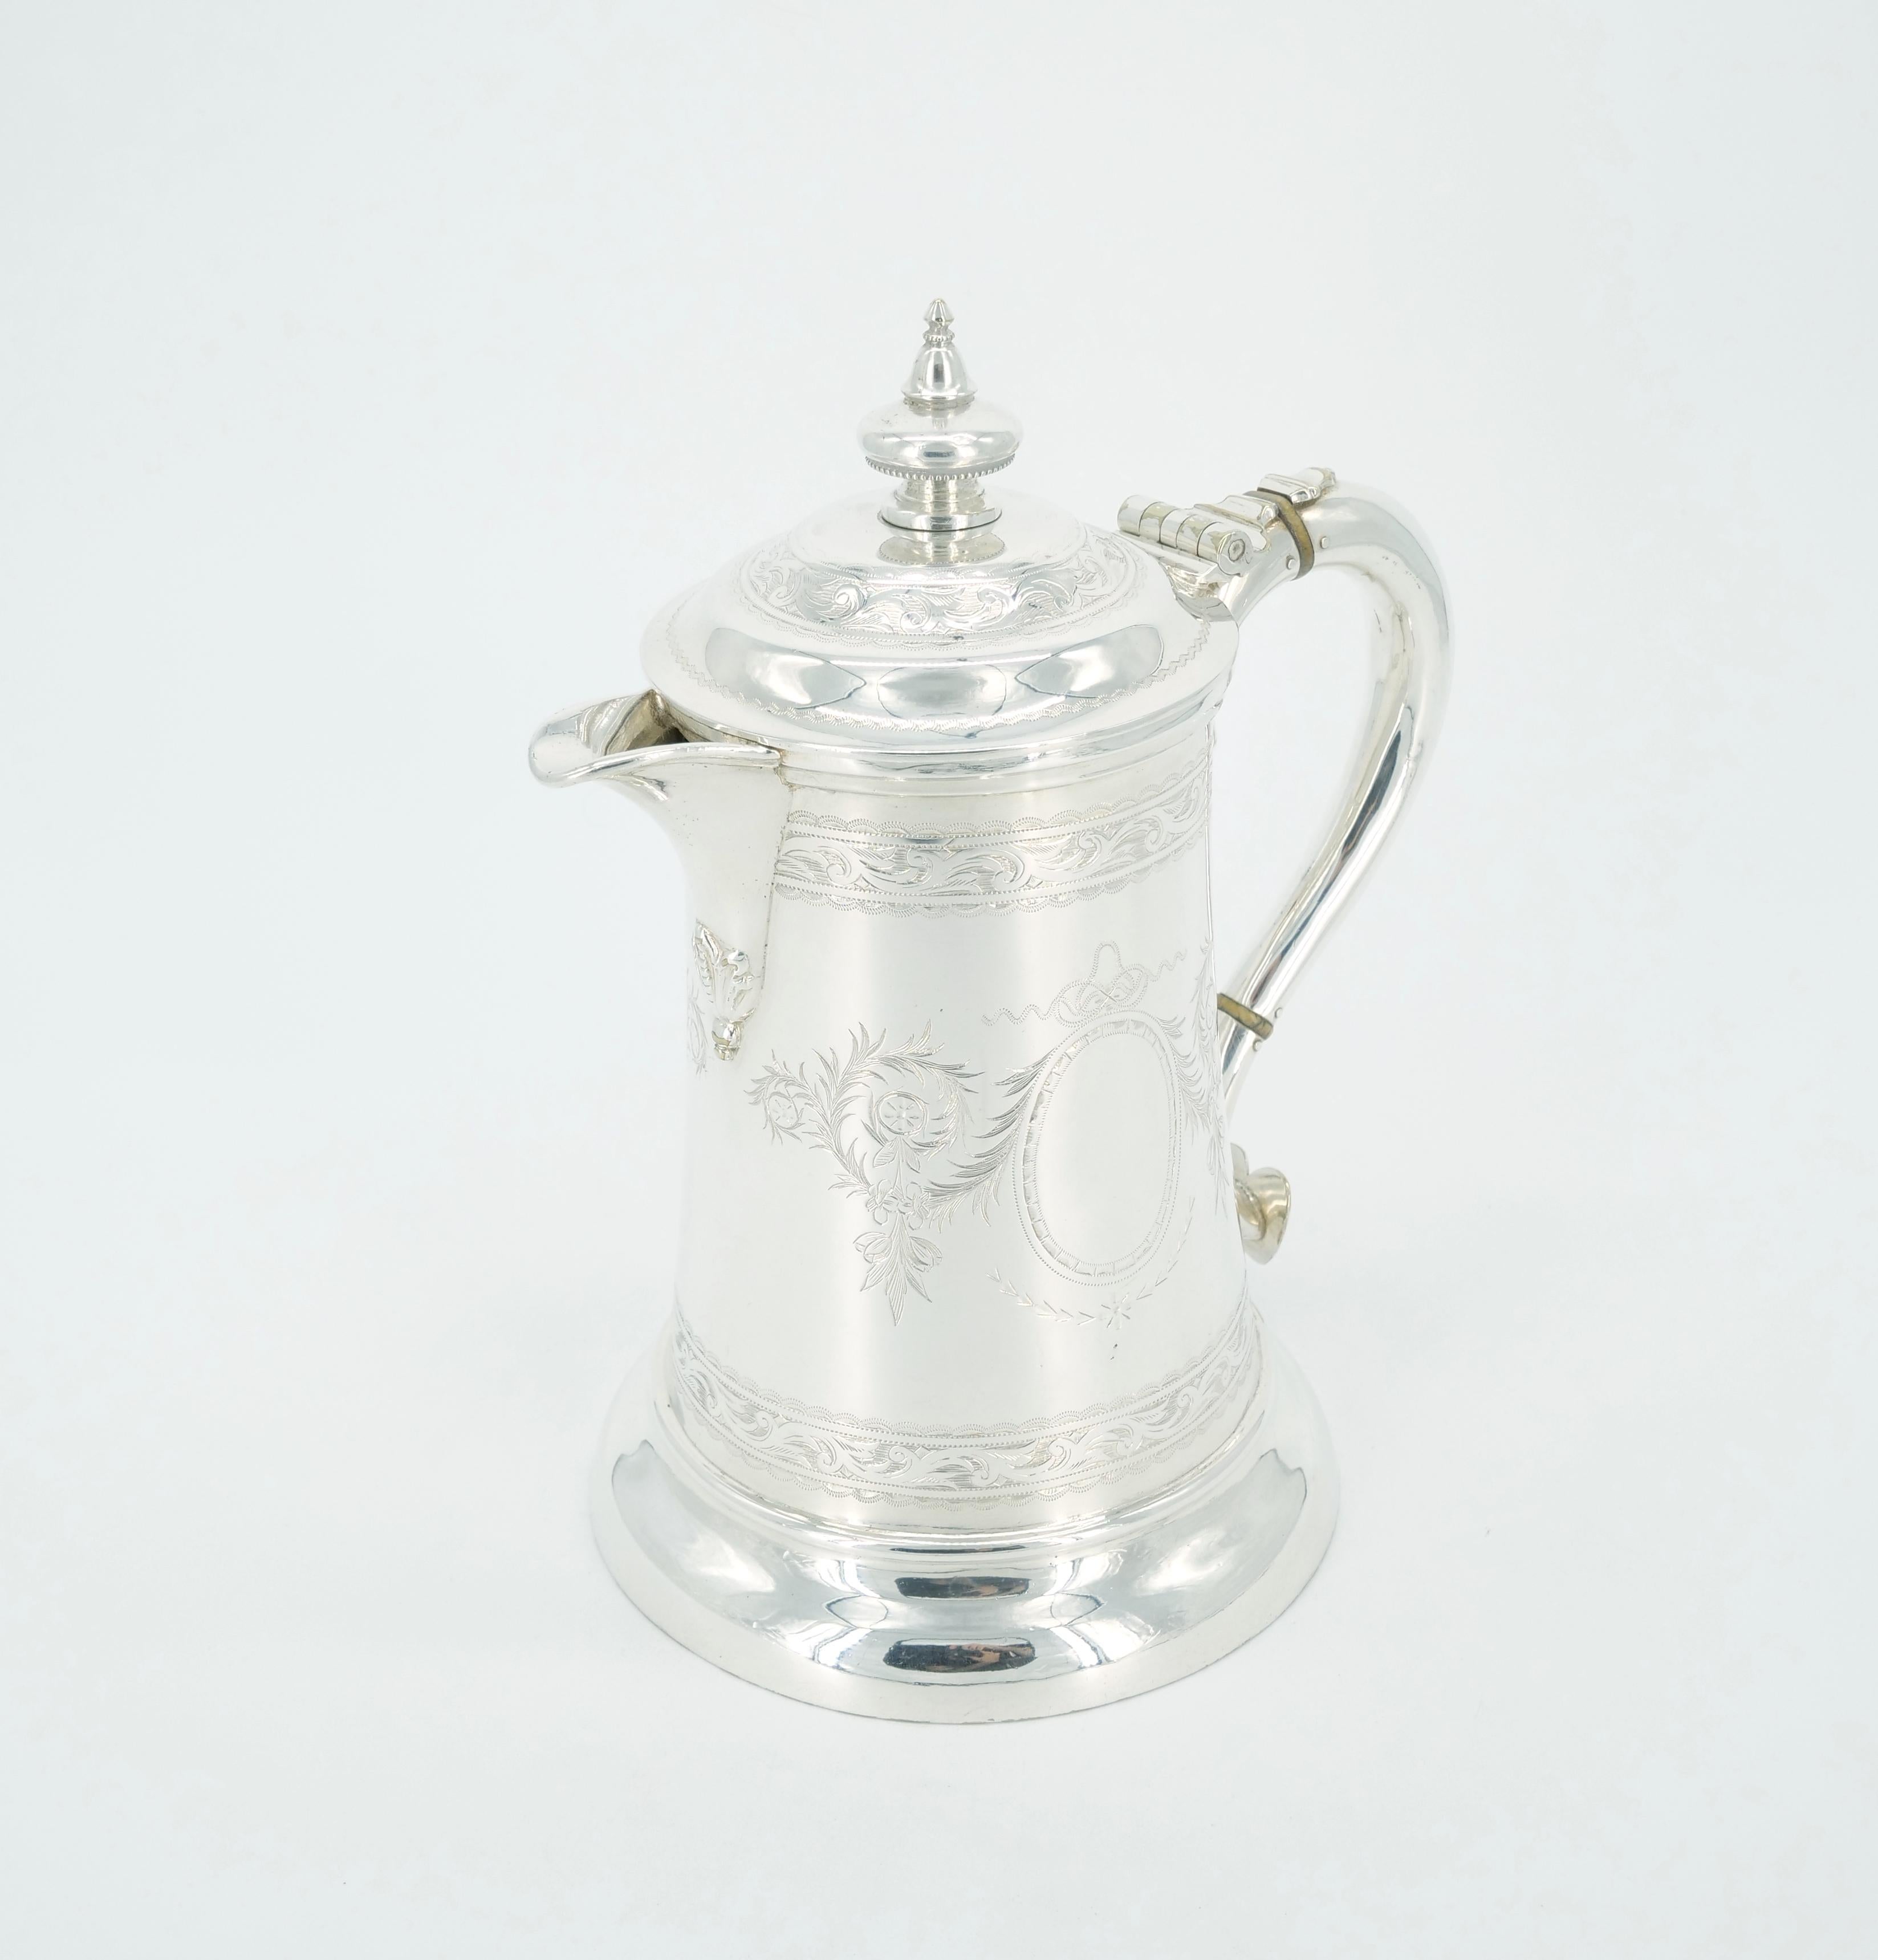 Erweitern Sie Ihre Sammlung mit dem exquisiten Charme unserer Queen Anne Tankard aus altem englischen Silberblech von Walker & Hall. Das Äußere ist aus reichhaltigem Silberblech gefertigt, das auf beiden Seiten mit fein gravierten Blattwerken